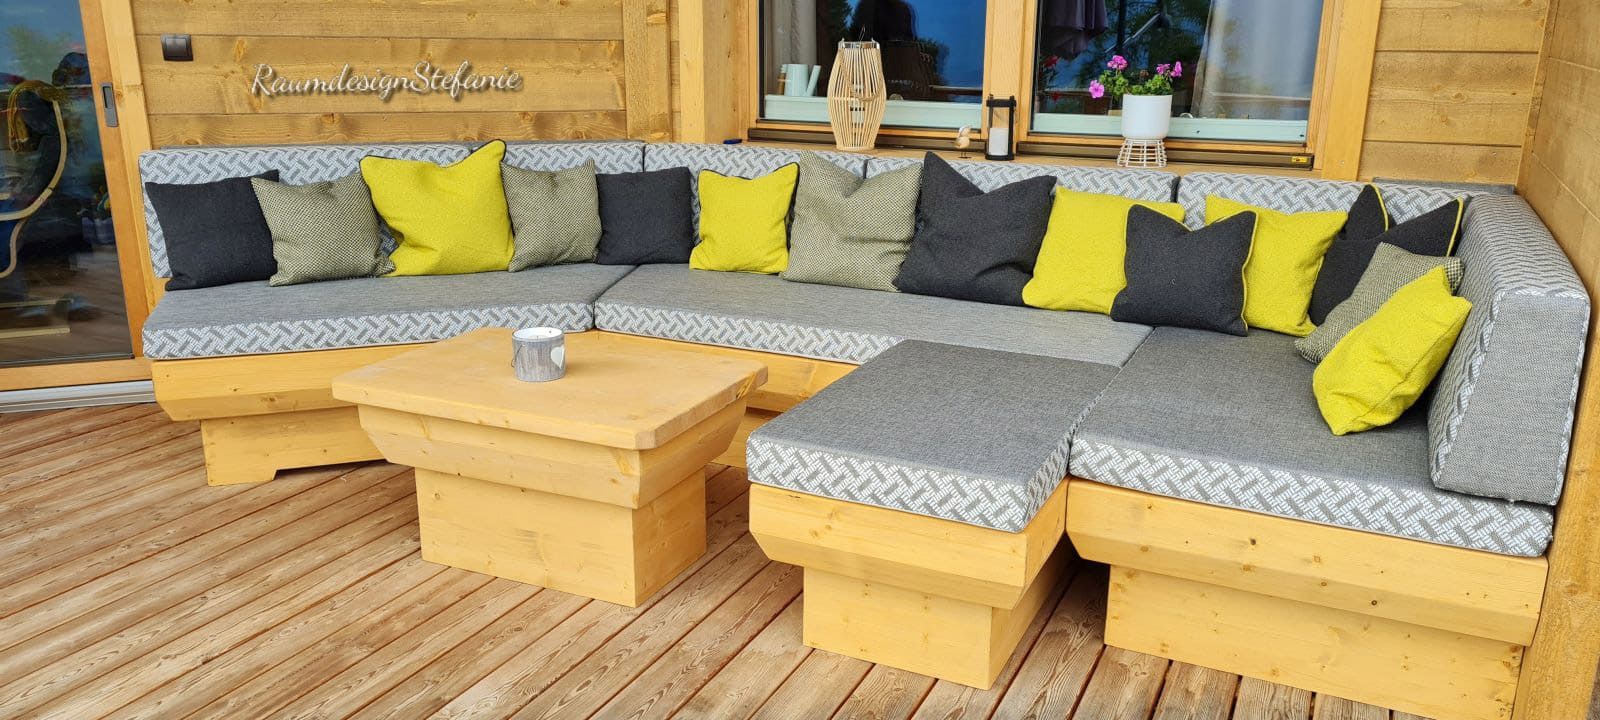 Terrasse mit Holzsitzbank mit hellgrauer Polsterung und Kissen in Gelb und Anthrazit von Raumdesign Stefanie 02